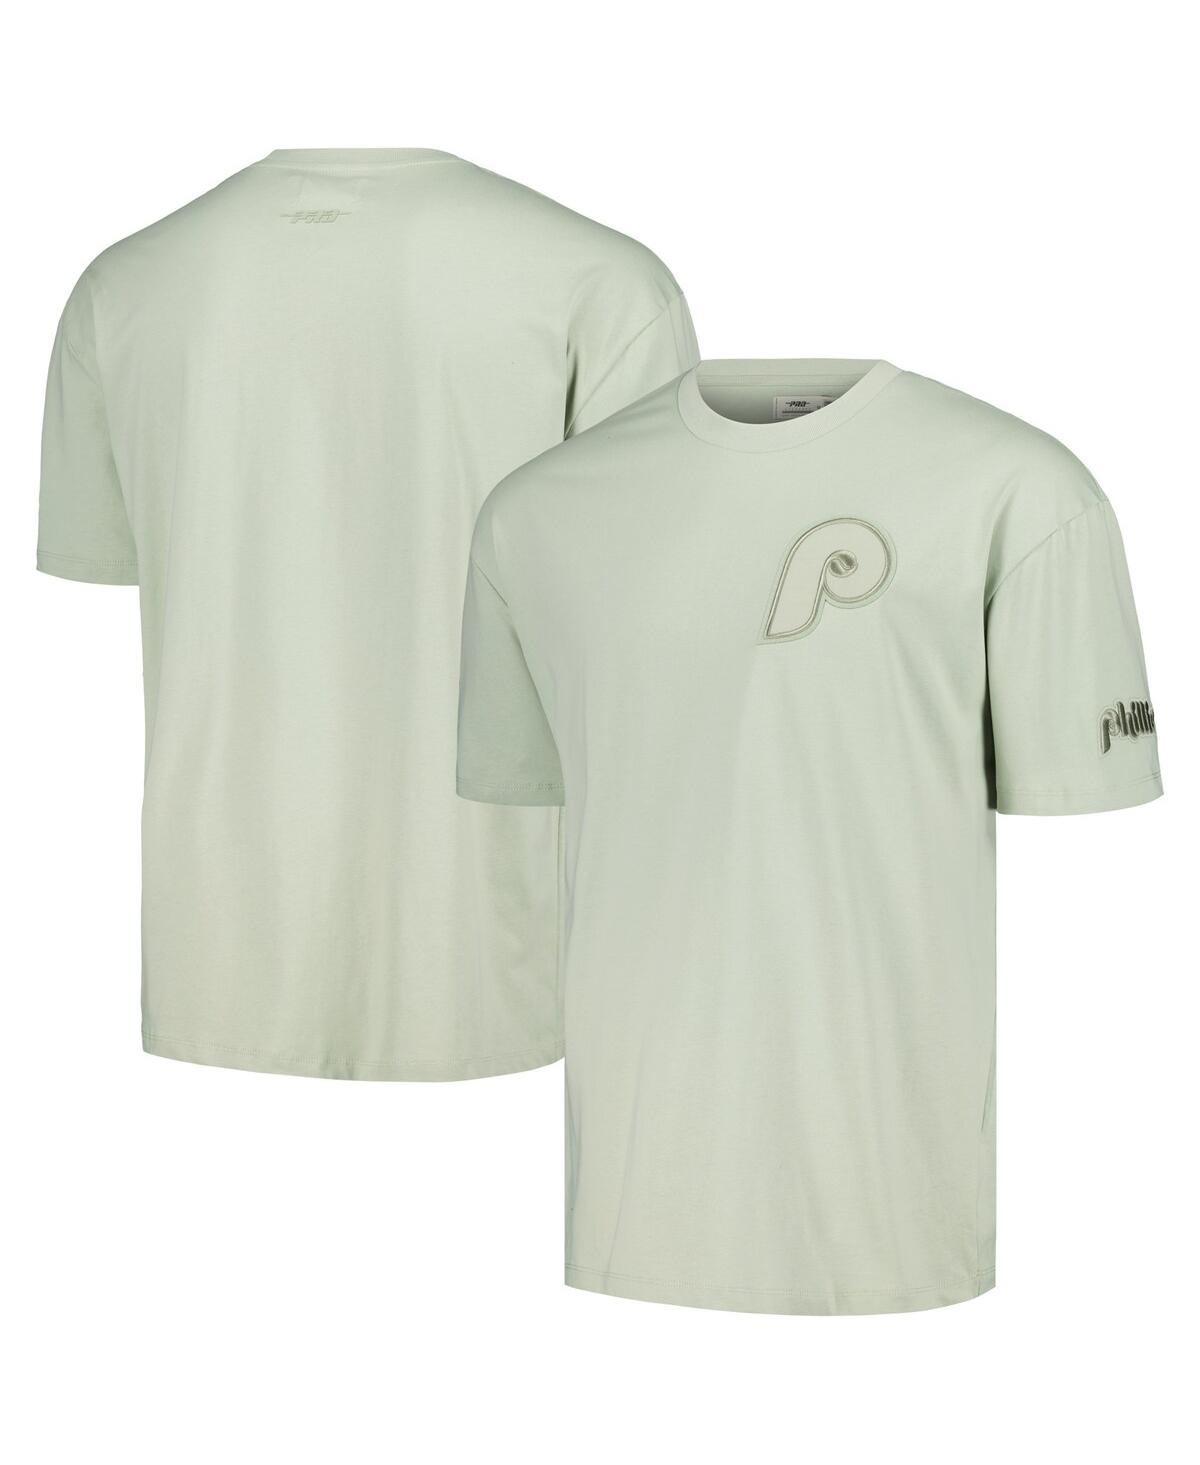 Shop Pro Standard Men's Mint Philadelphia Phillies Neutral Cj Dropped Shoulders T-shirt